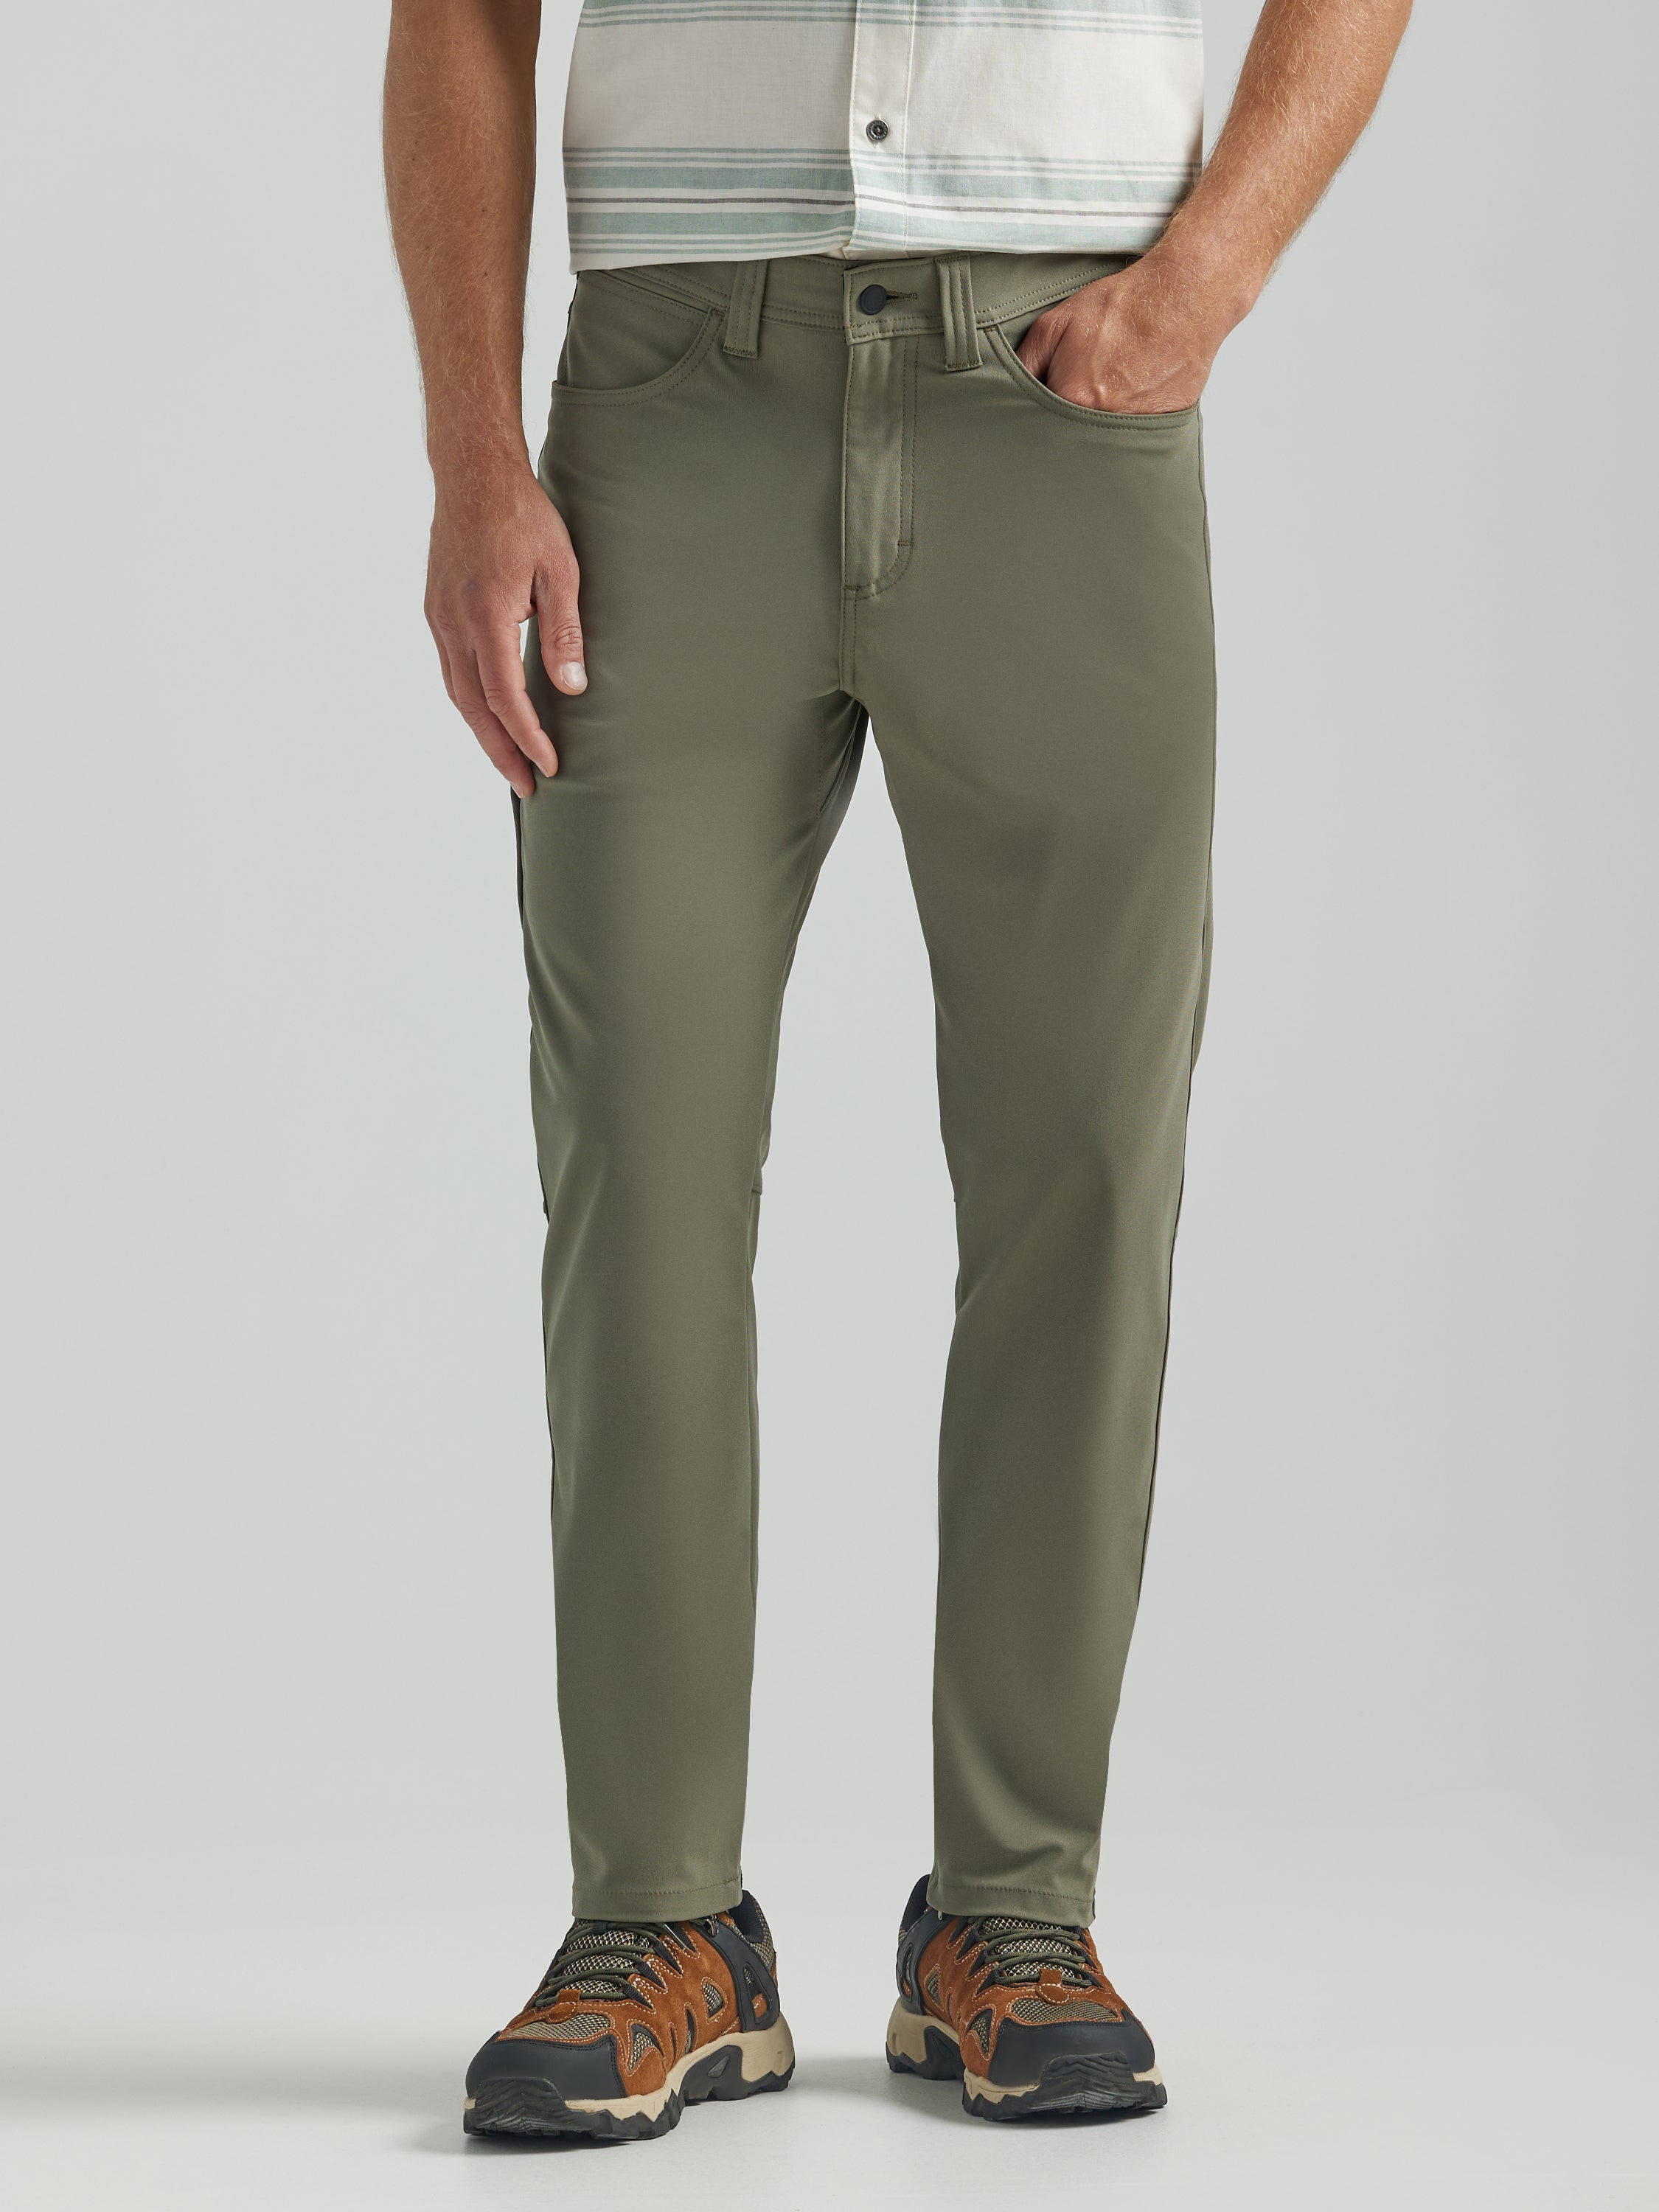 All Terrain Gear FWDS 5 Pocket Pants in Dusty Olive Hosen Wrangler   